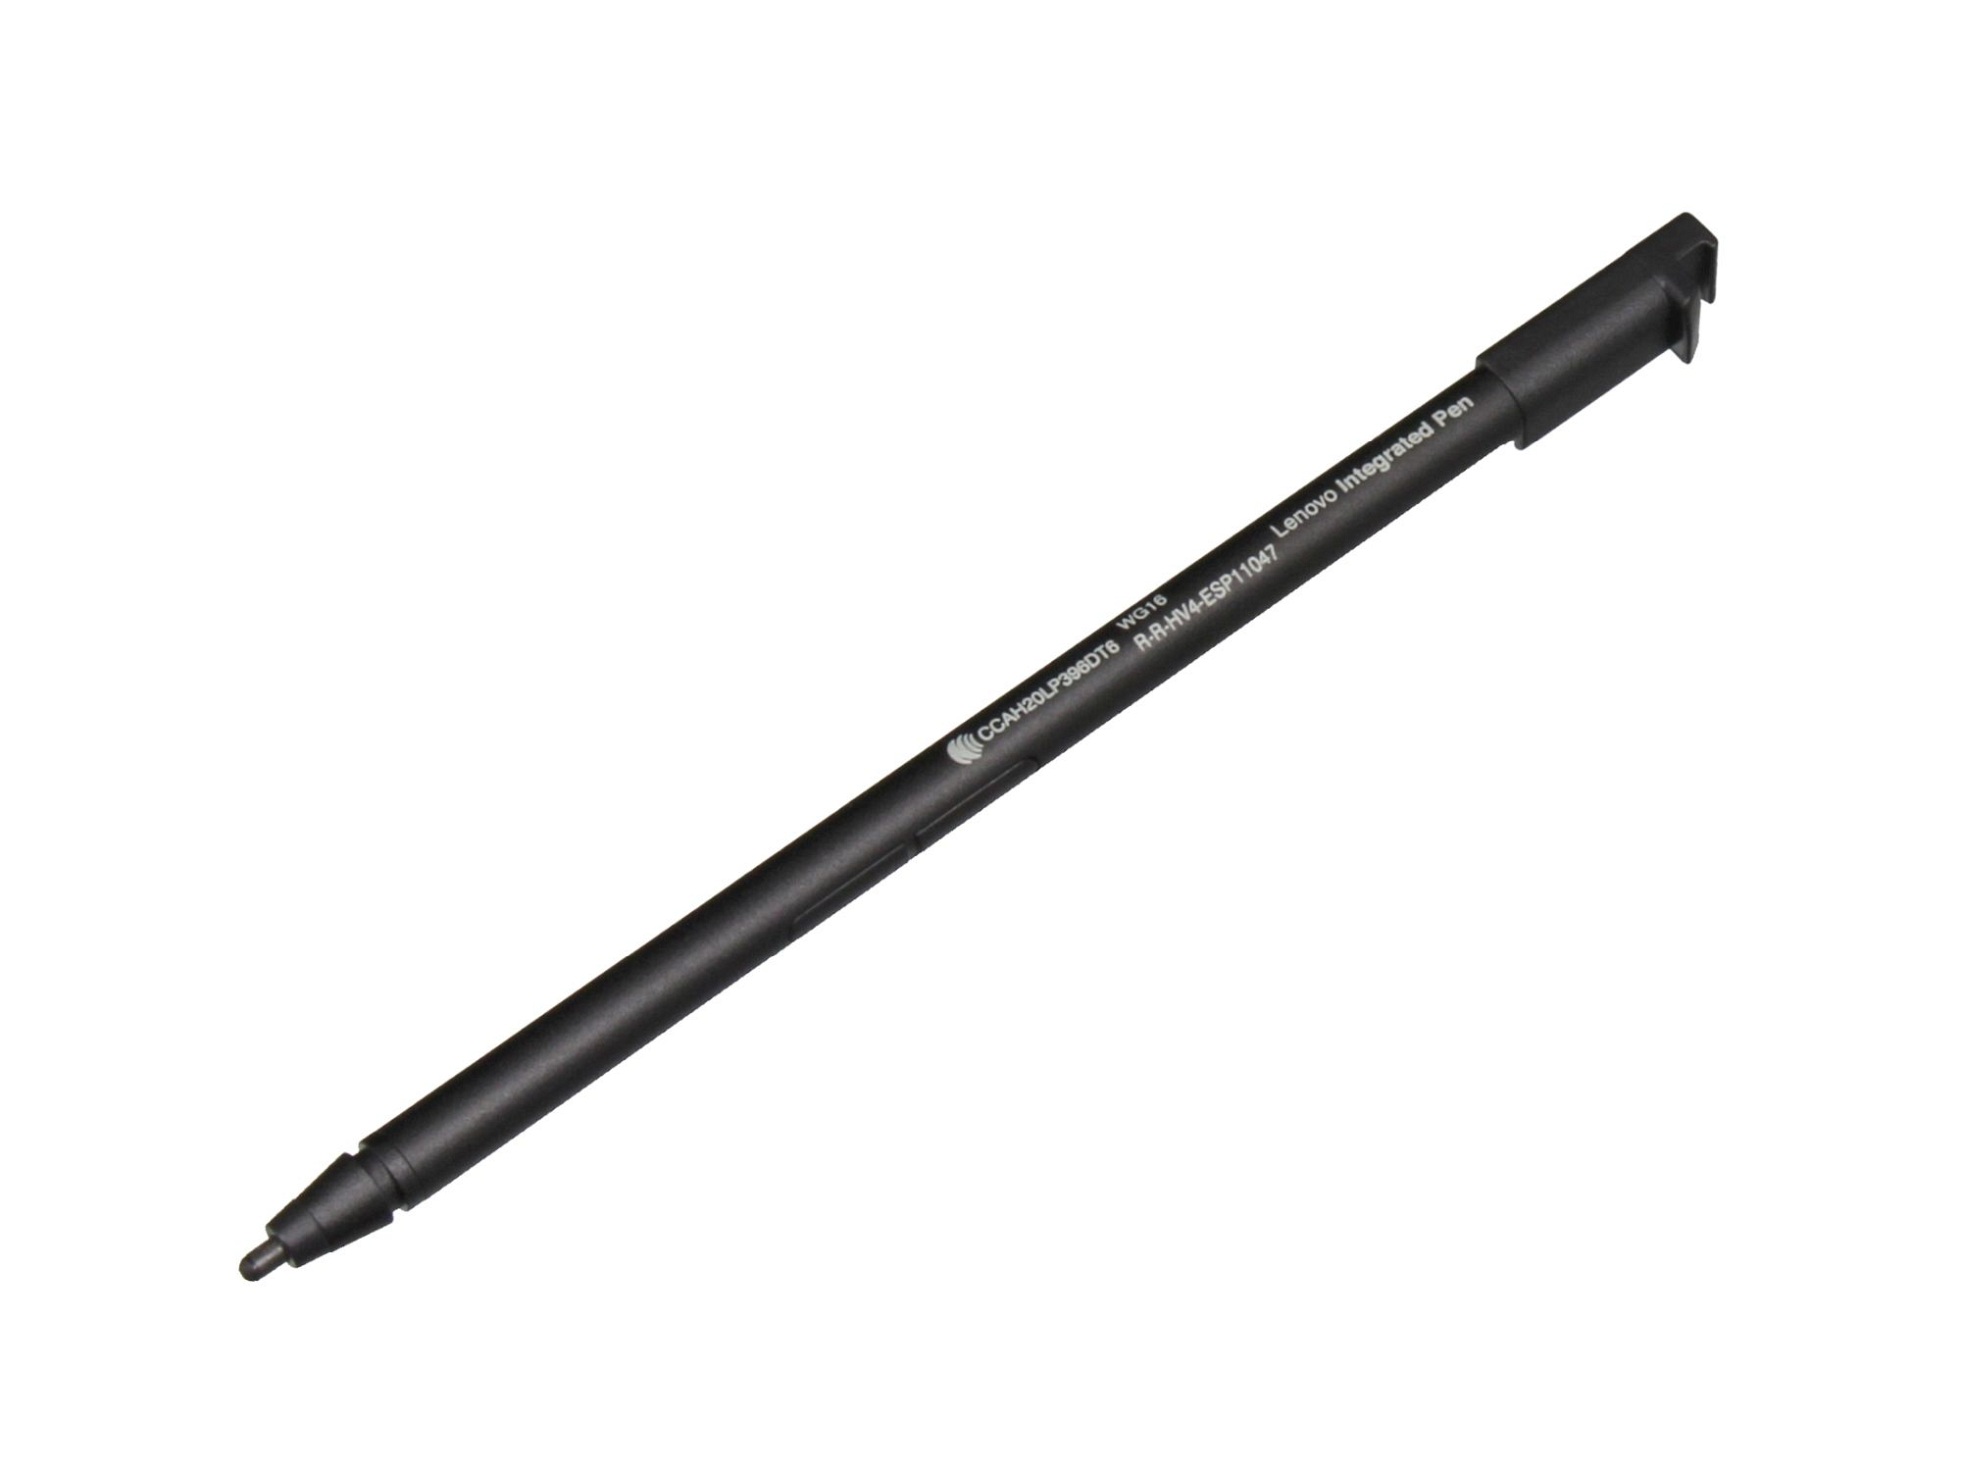 Lenovo 5D61K08707 Stylus Pen